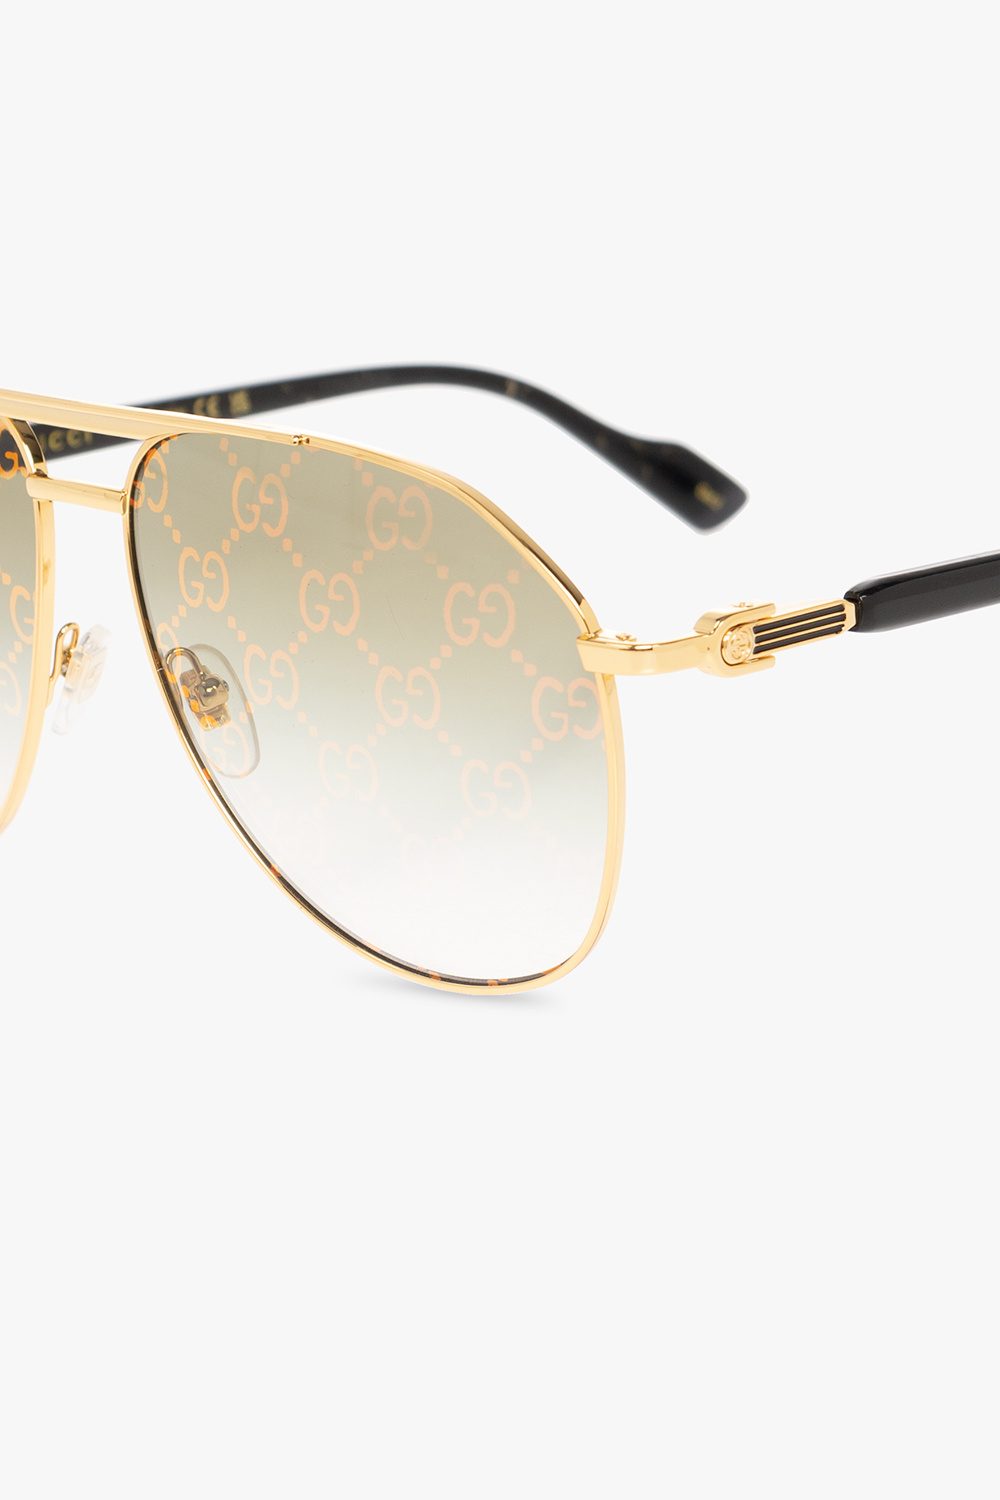 Gucci Square sunglasses with logo